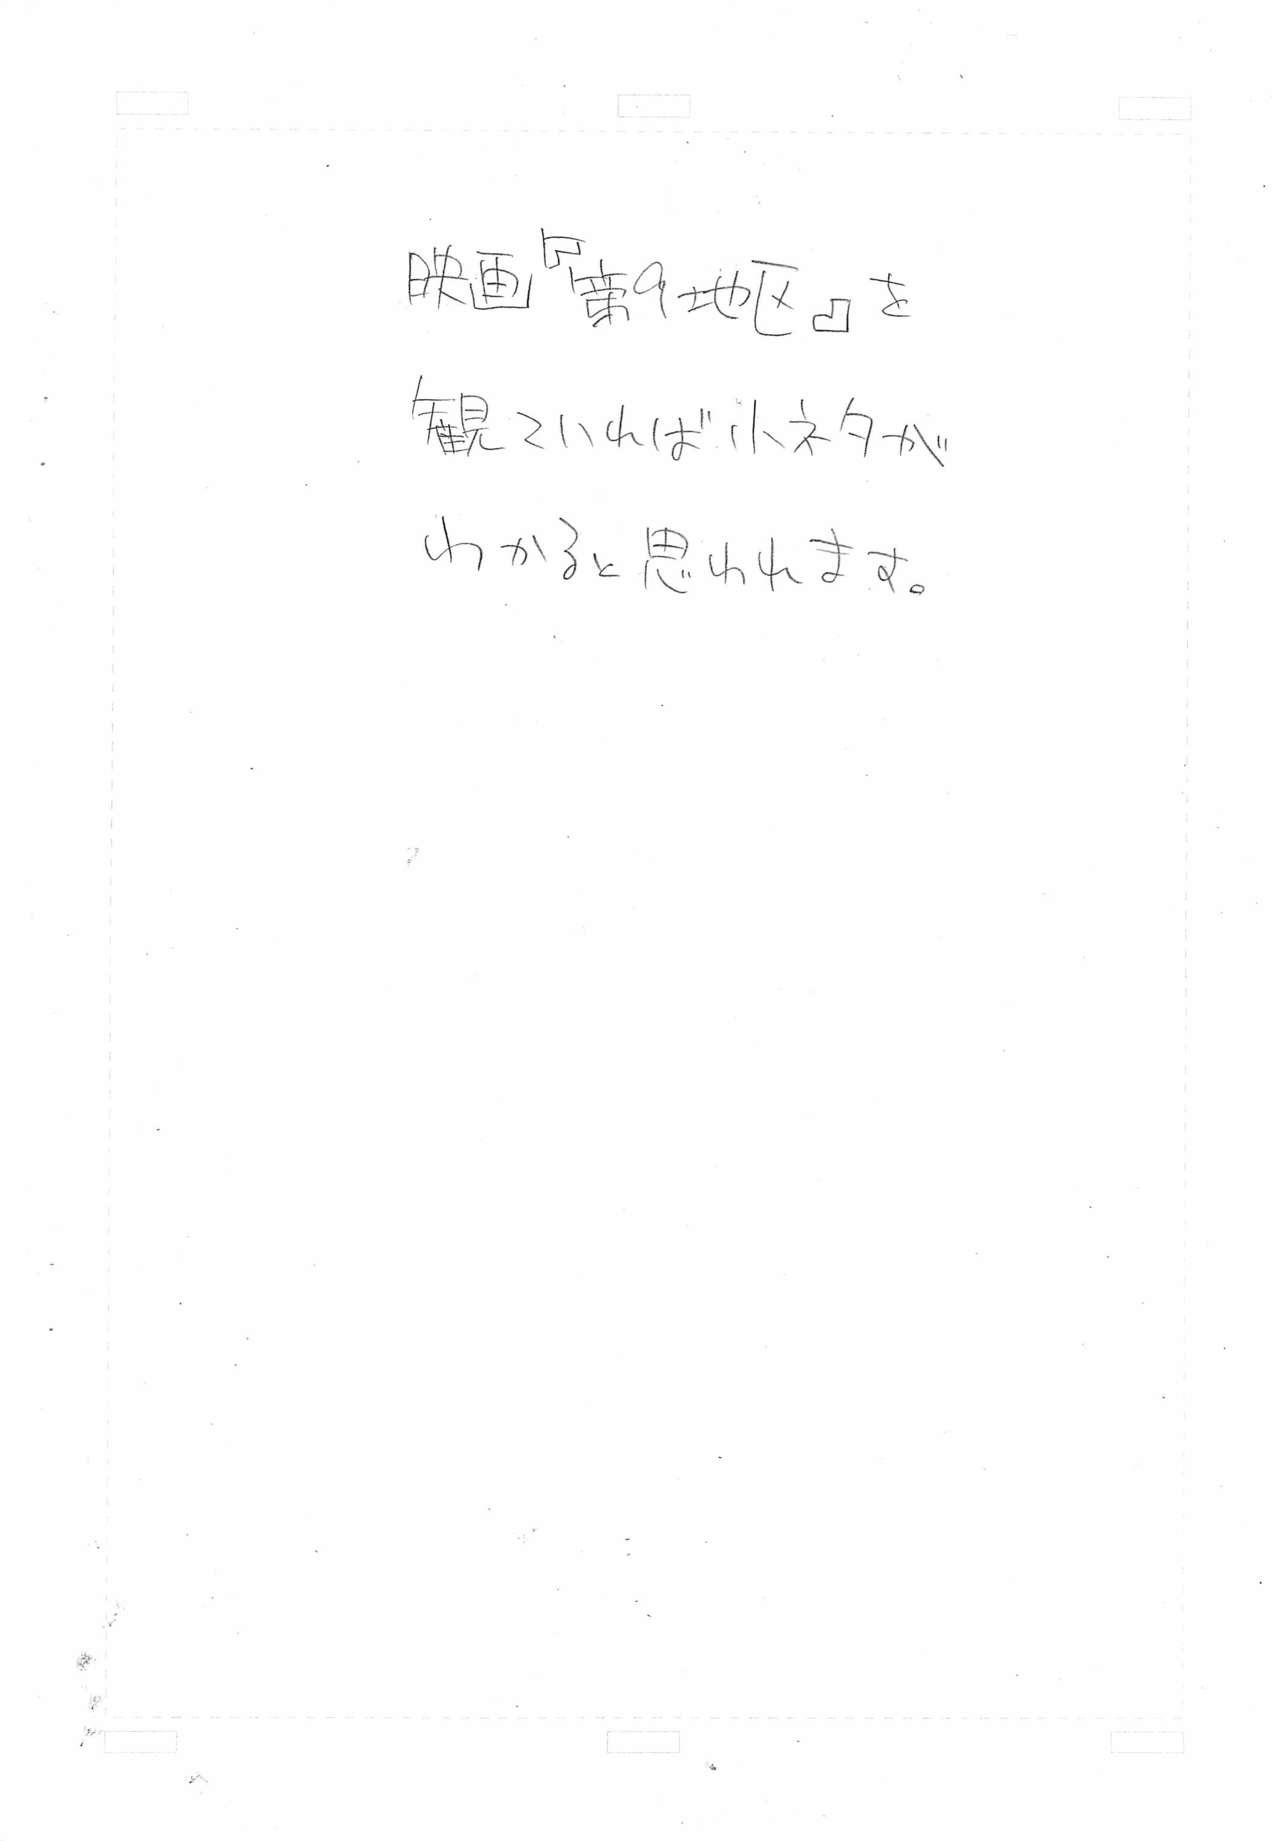 Man (Puniket 21) [So-matou (So-ma)] Kodomo ja (Ryaku) 8 Kurai? (Fushigiboshi no Futago Hime) - Fushigiboshi no futagohime | twin princesses of the wonder planet 1080p - Page 2